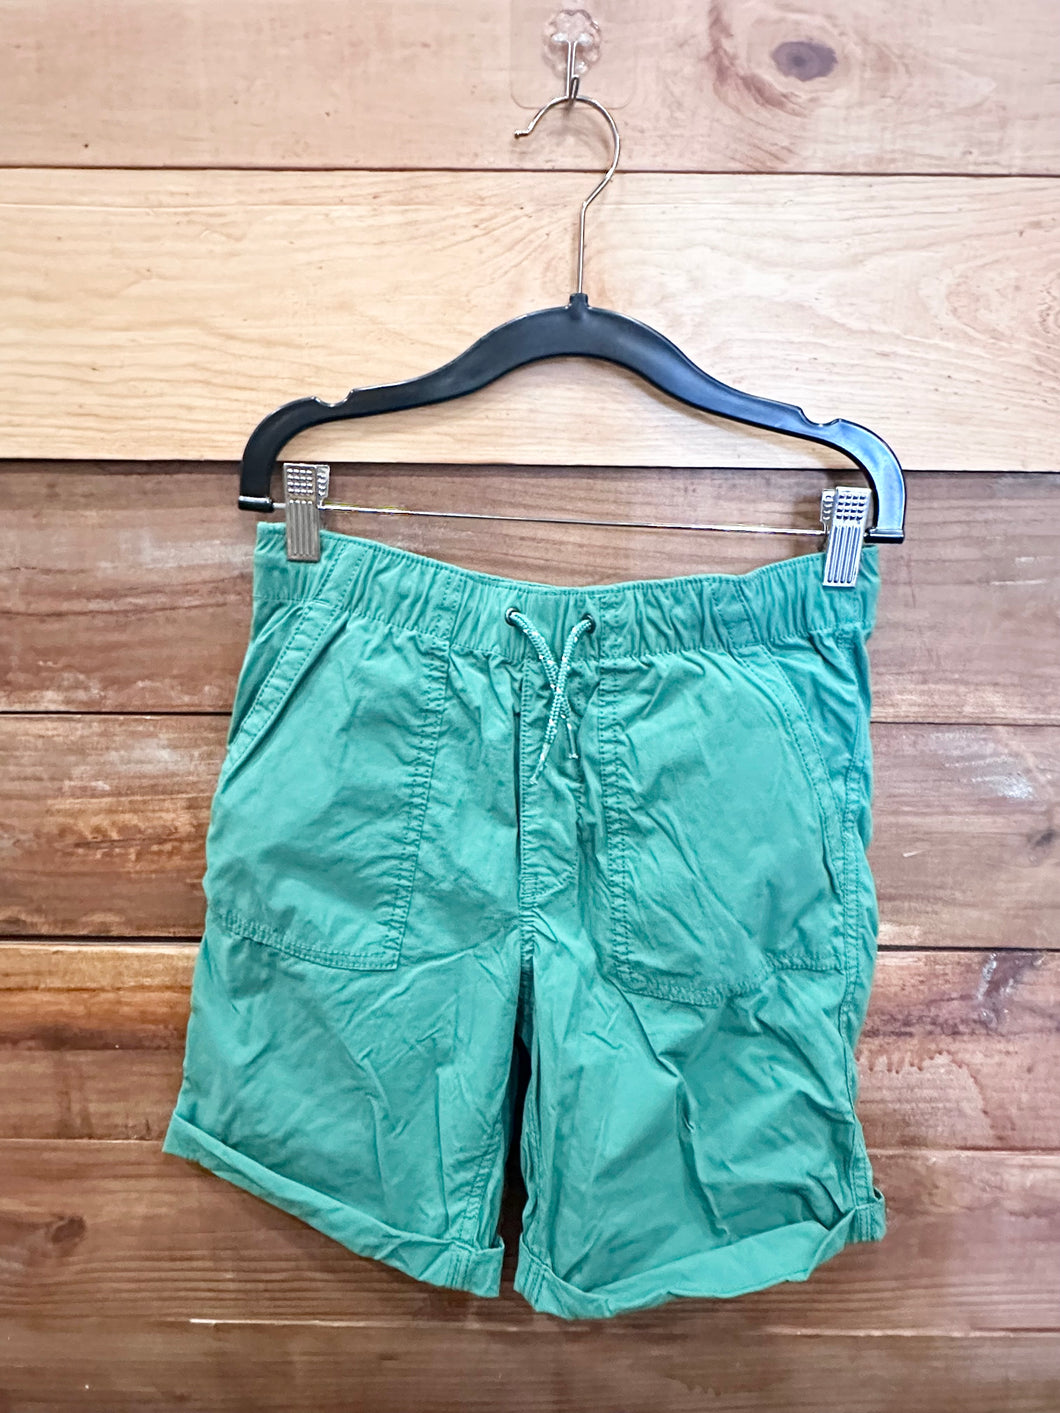 Gap Green Shorts Size 12